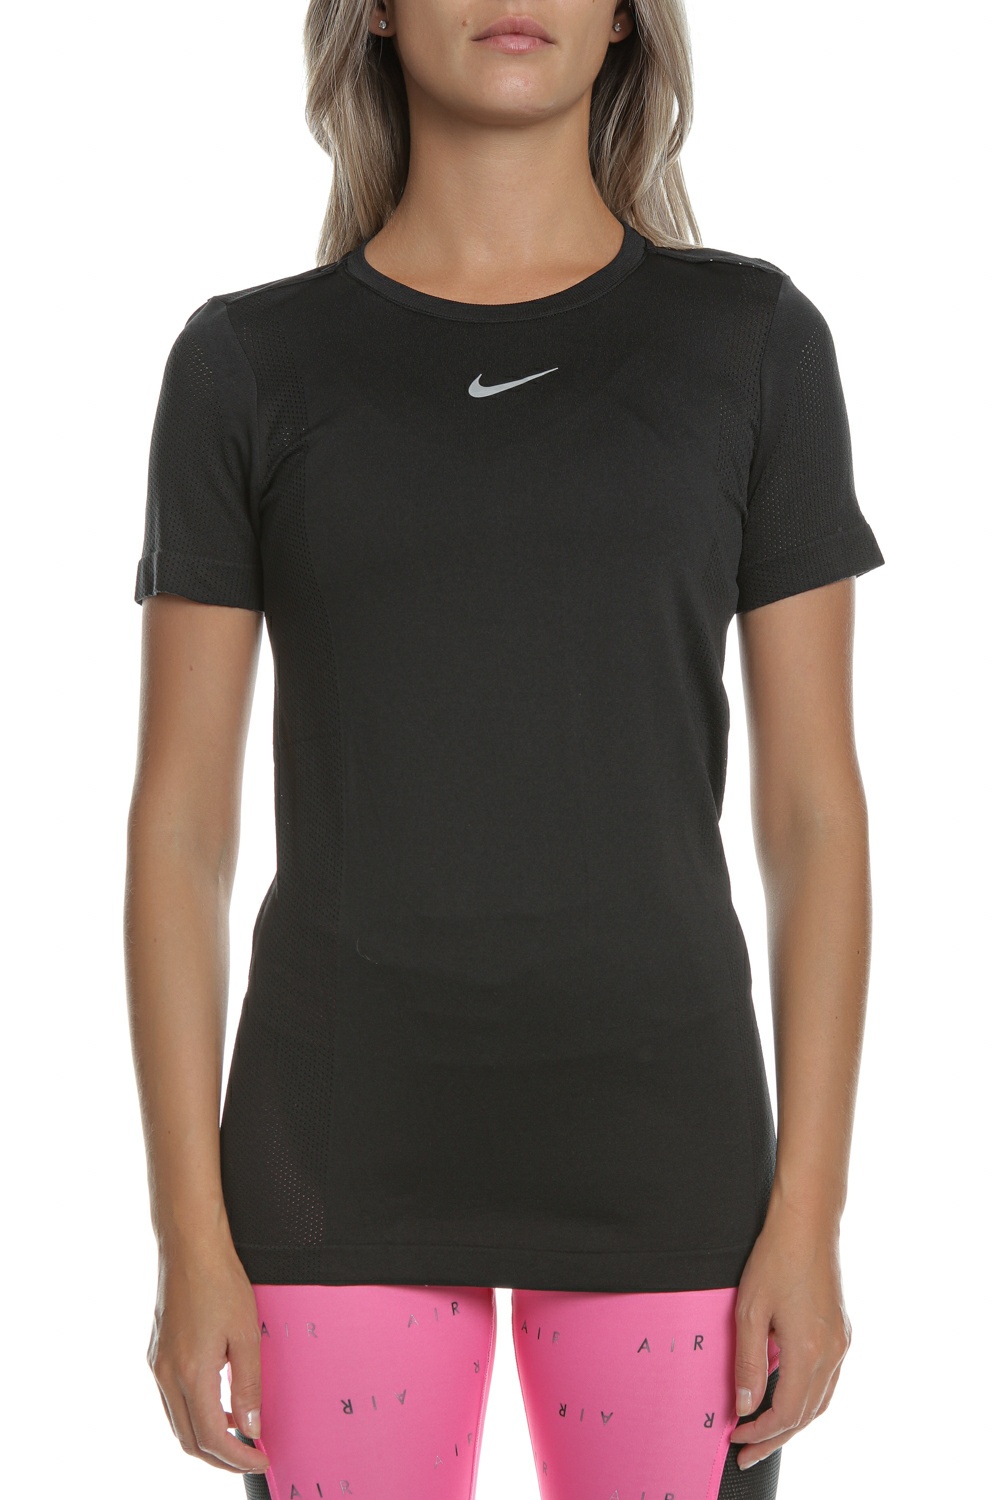 Γυναικεία/Ρούχα/Αθλητικά/T-shirt-Τοπ NIKE - Γυναικεία αθλητική μπλούζα NIKE INFINITE μαύρο